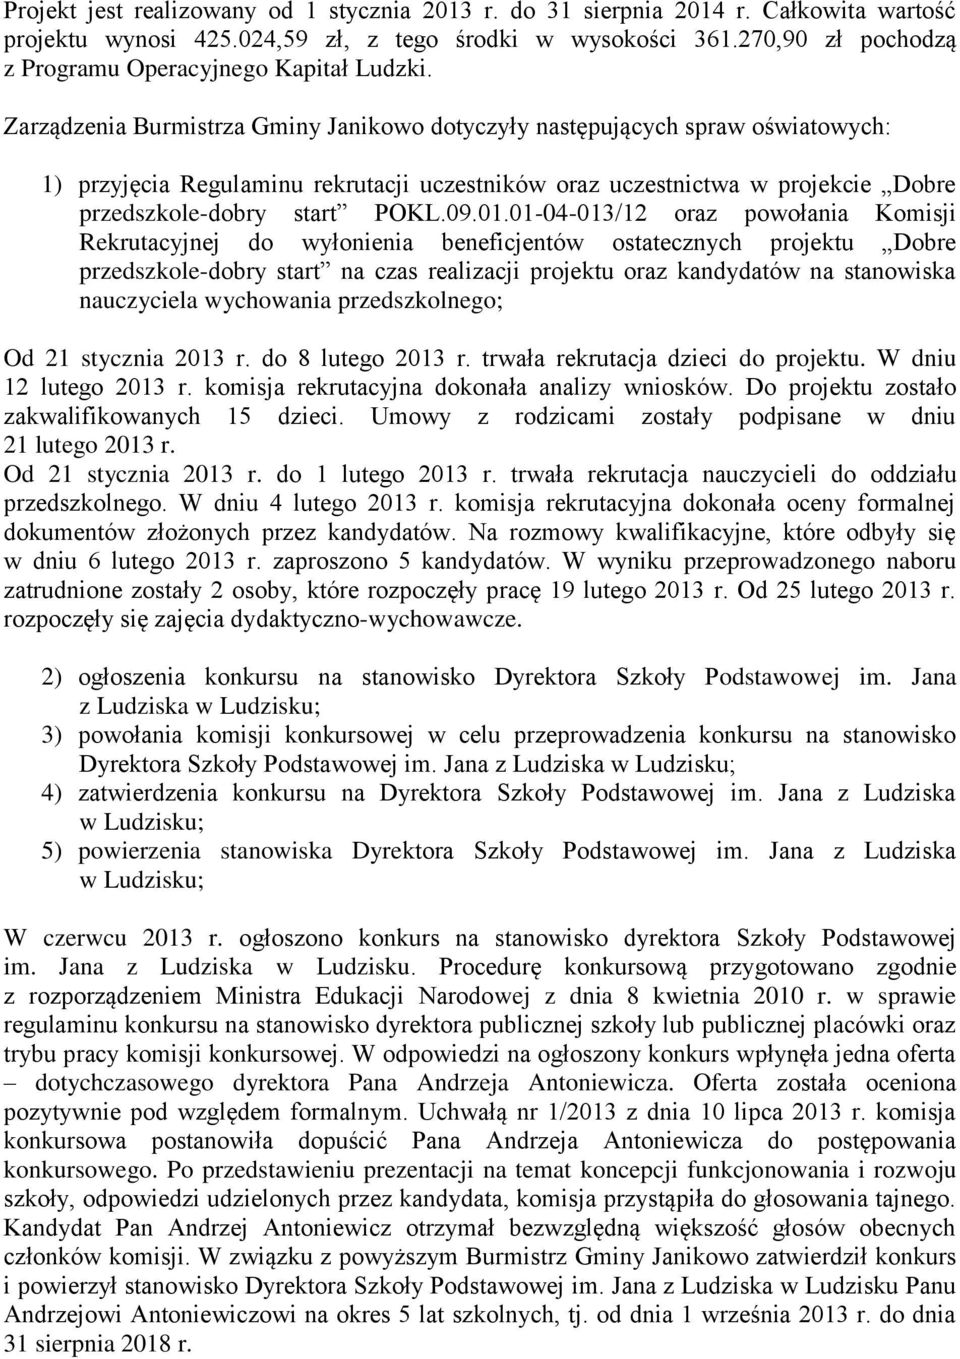 Zarządzenia Burmistrza Gminy Janikowo dotyczyły następujących spraw oświatowych: 1) przyjęcia Regulaminu rekrutacji uczestników oraz uczestnictwa w projekcie Dobre przedszkole-dobry start POKL.09.01.